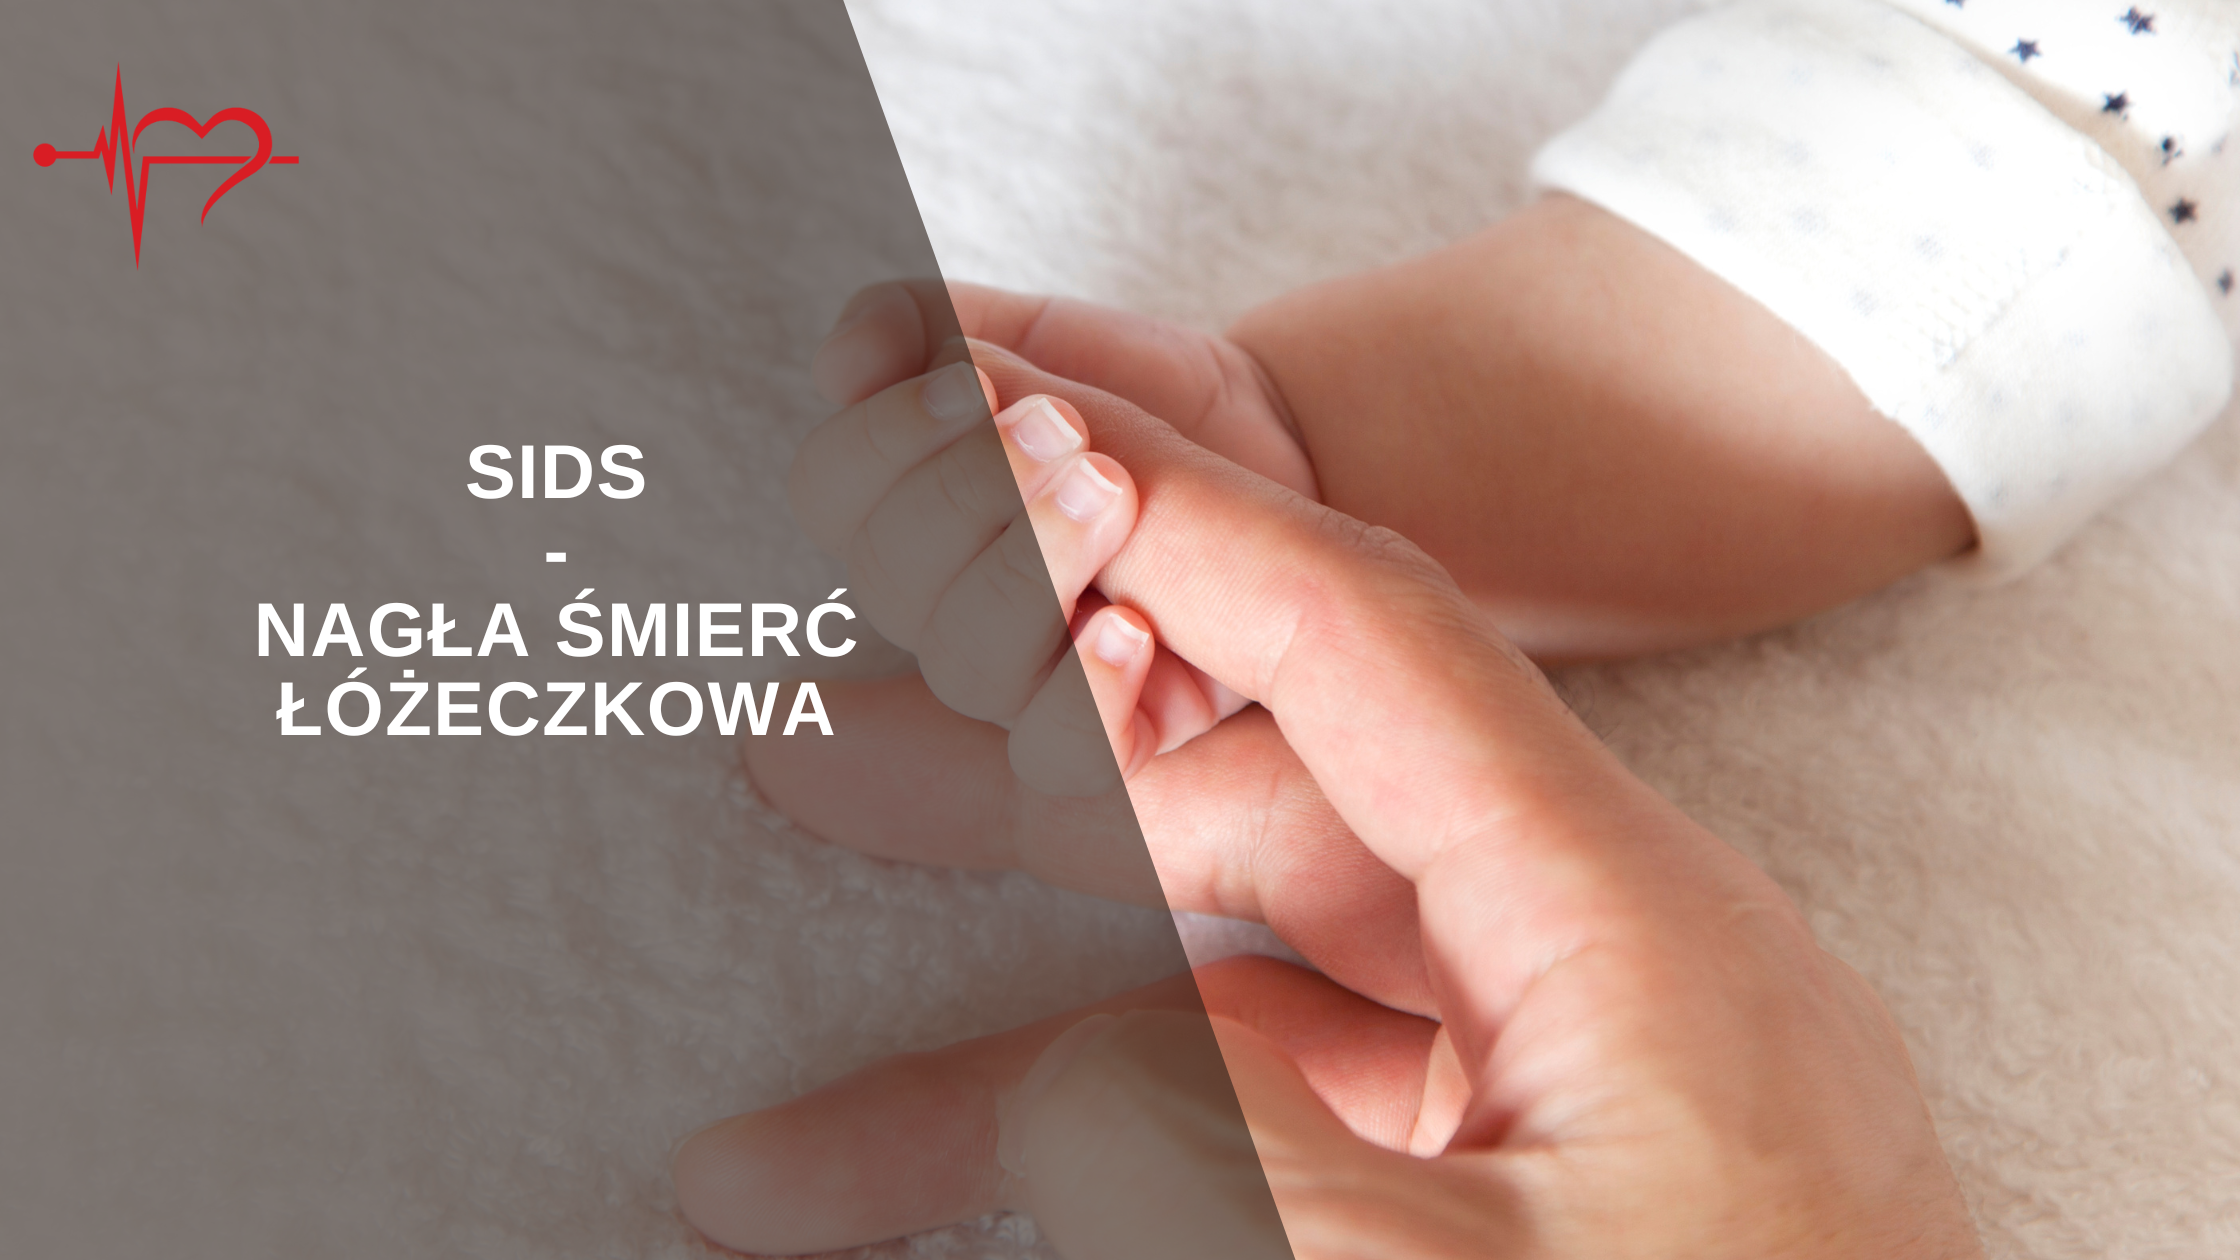 Read more about the article SIDS- Nagła Śmierć Łóżeczkowa